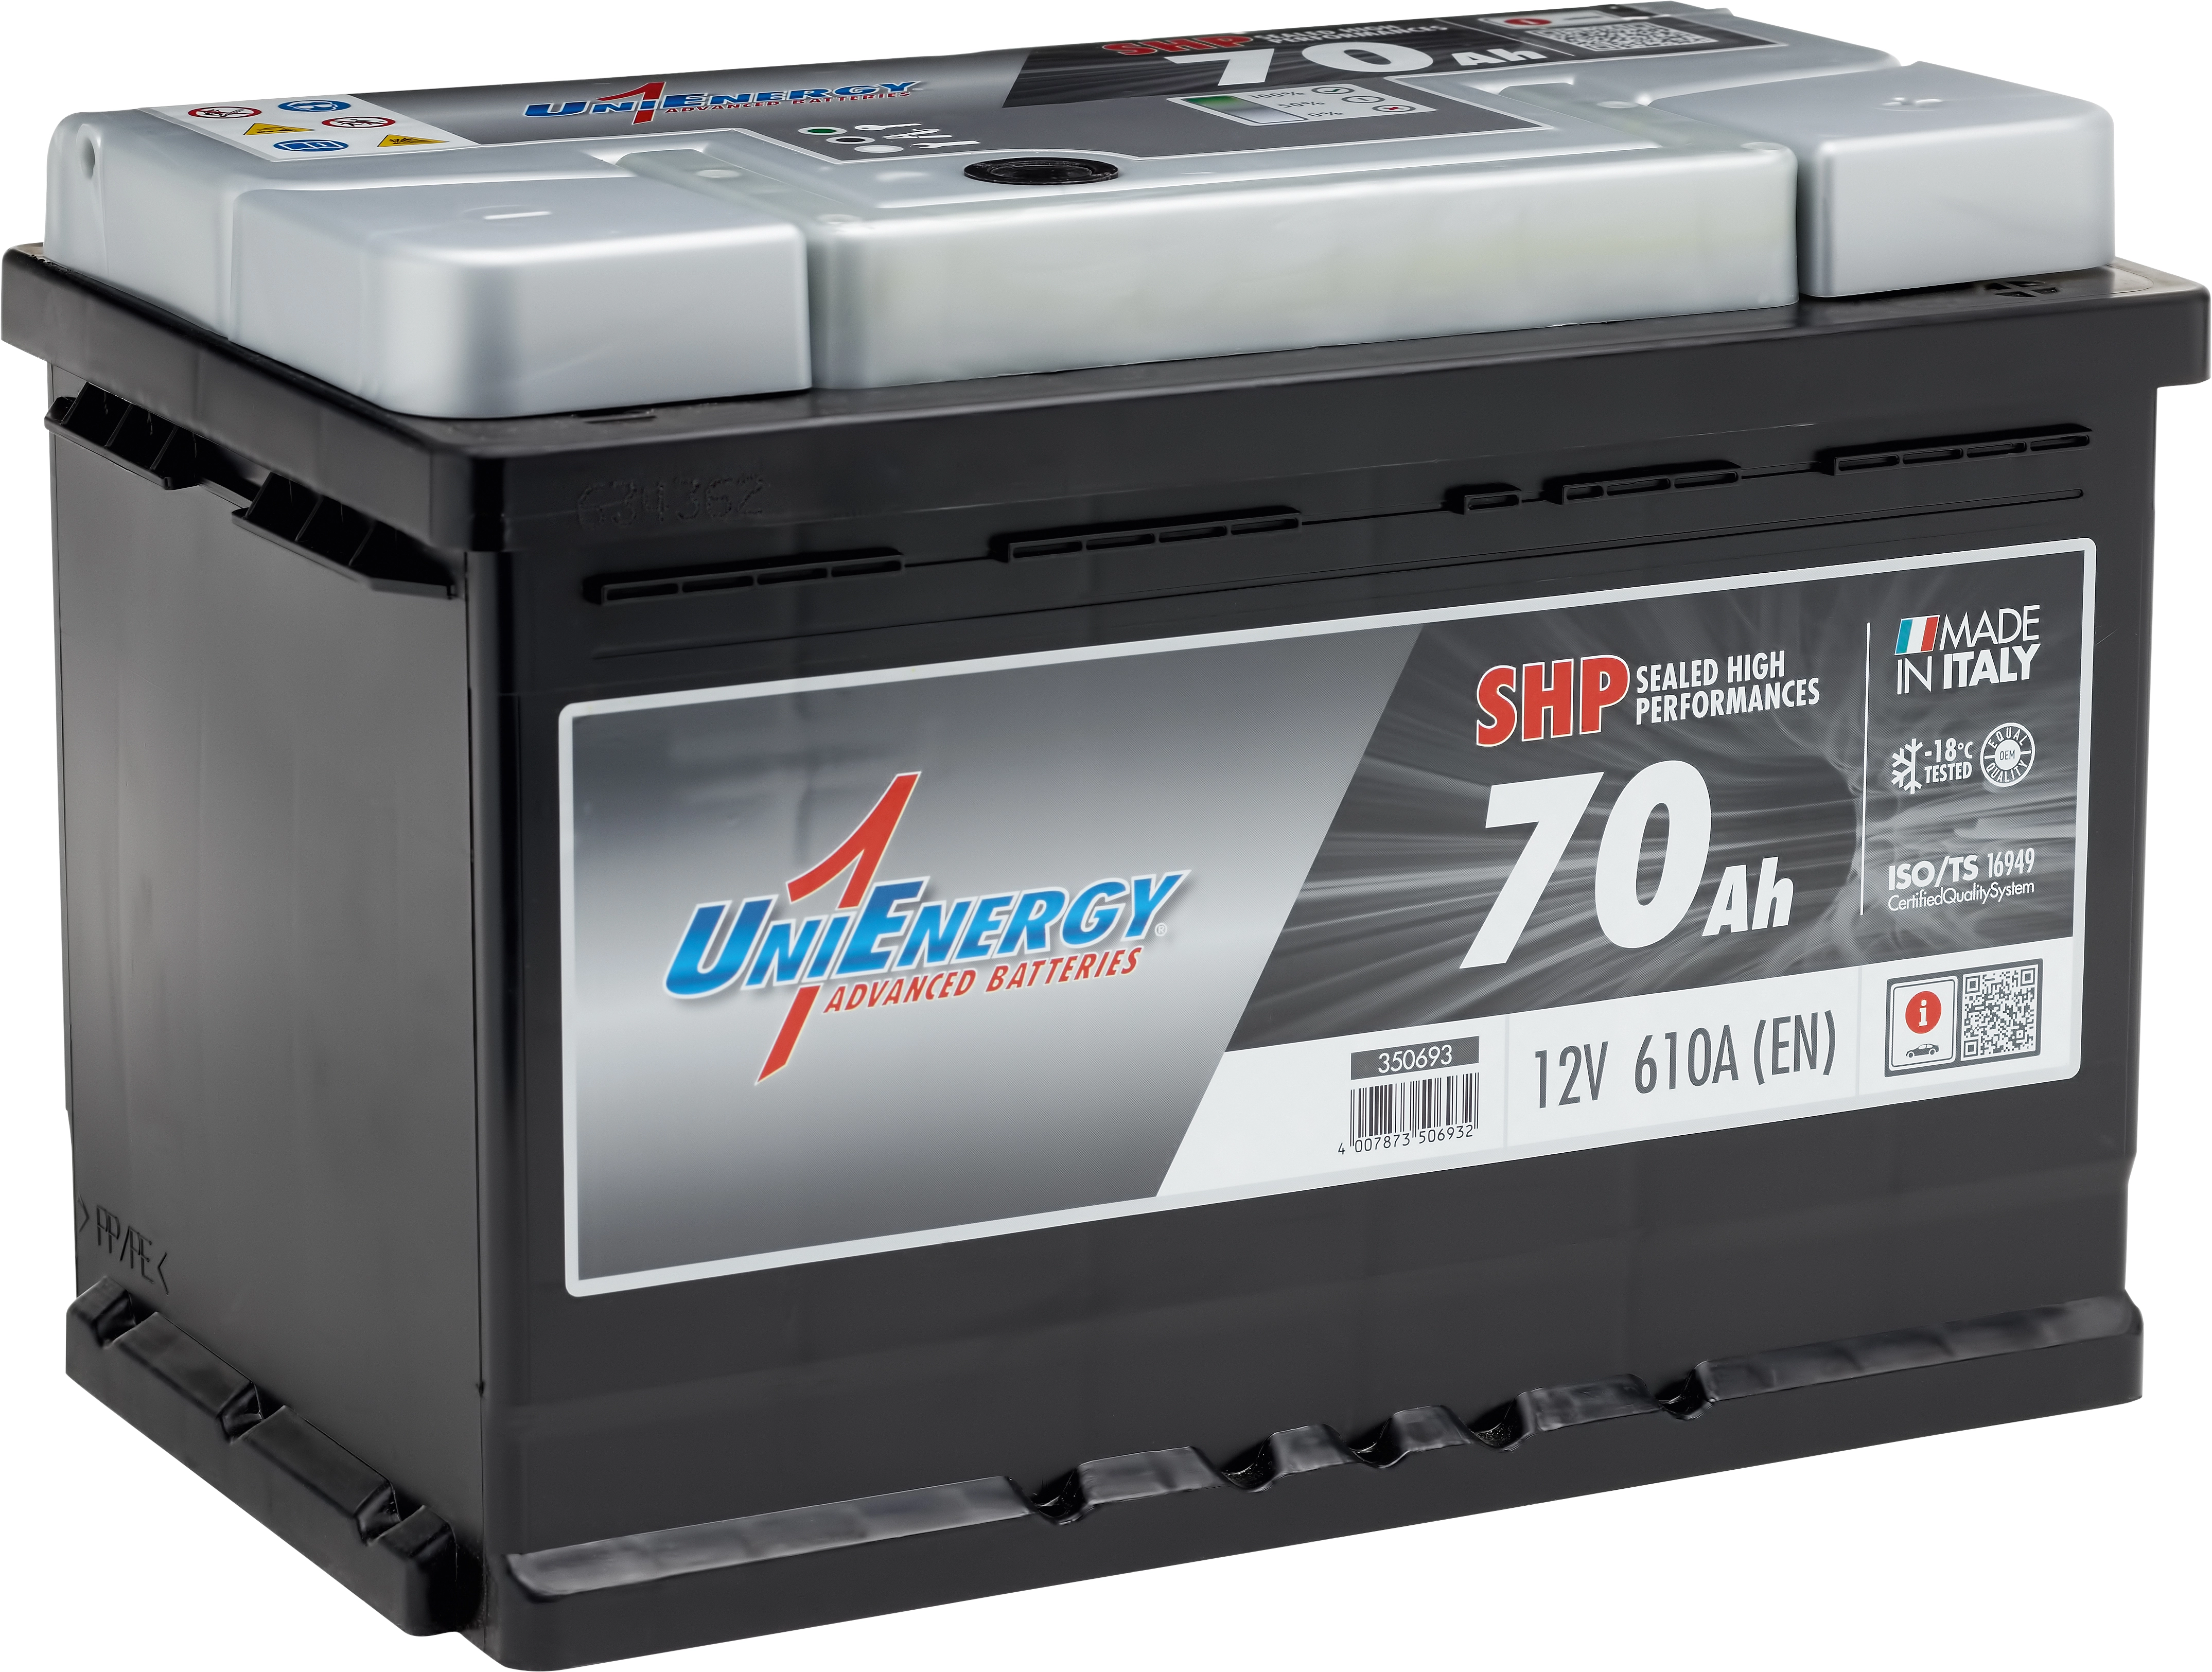 UniEnergy Autobatterie 70 Ah kaufen bei OBI